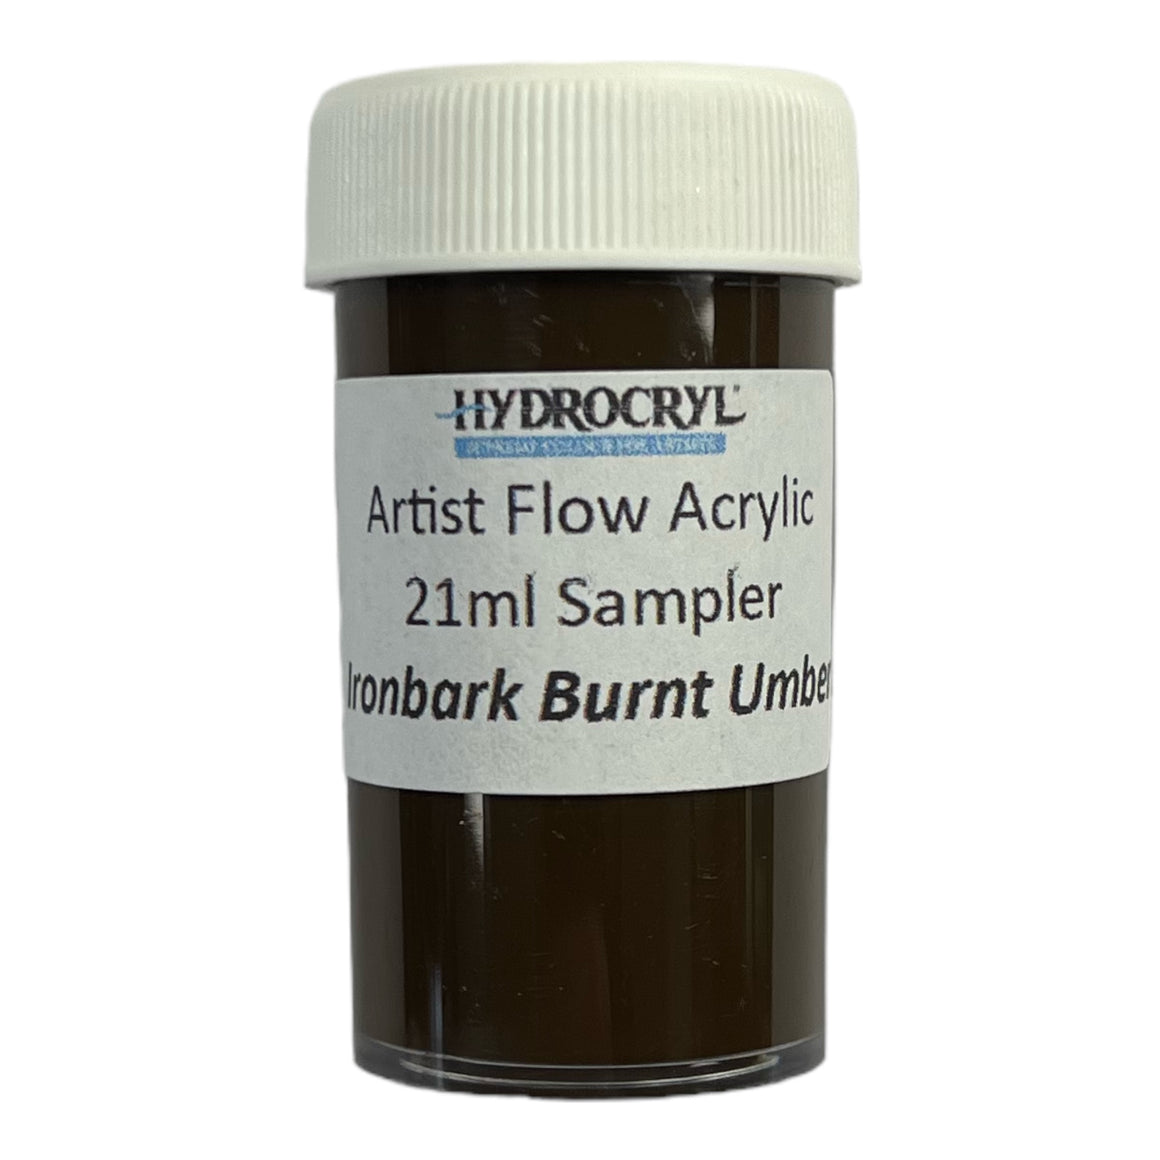 IRONBARK BURNT UMBER Hydrocryl Artist Flow Acrylic 21ml Sampler